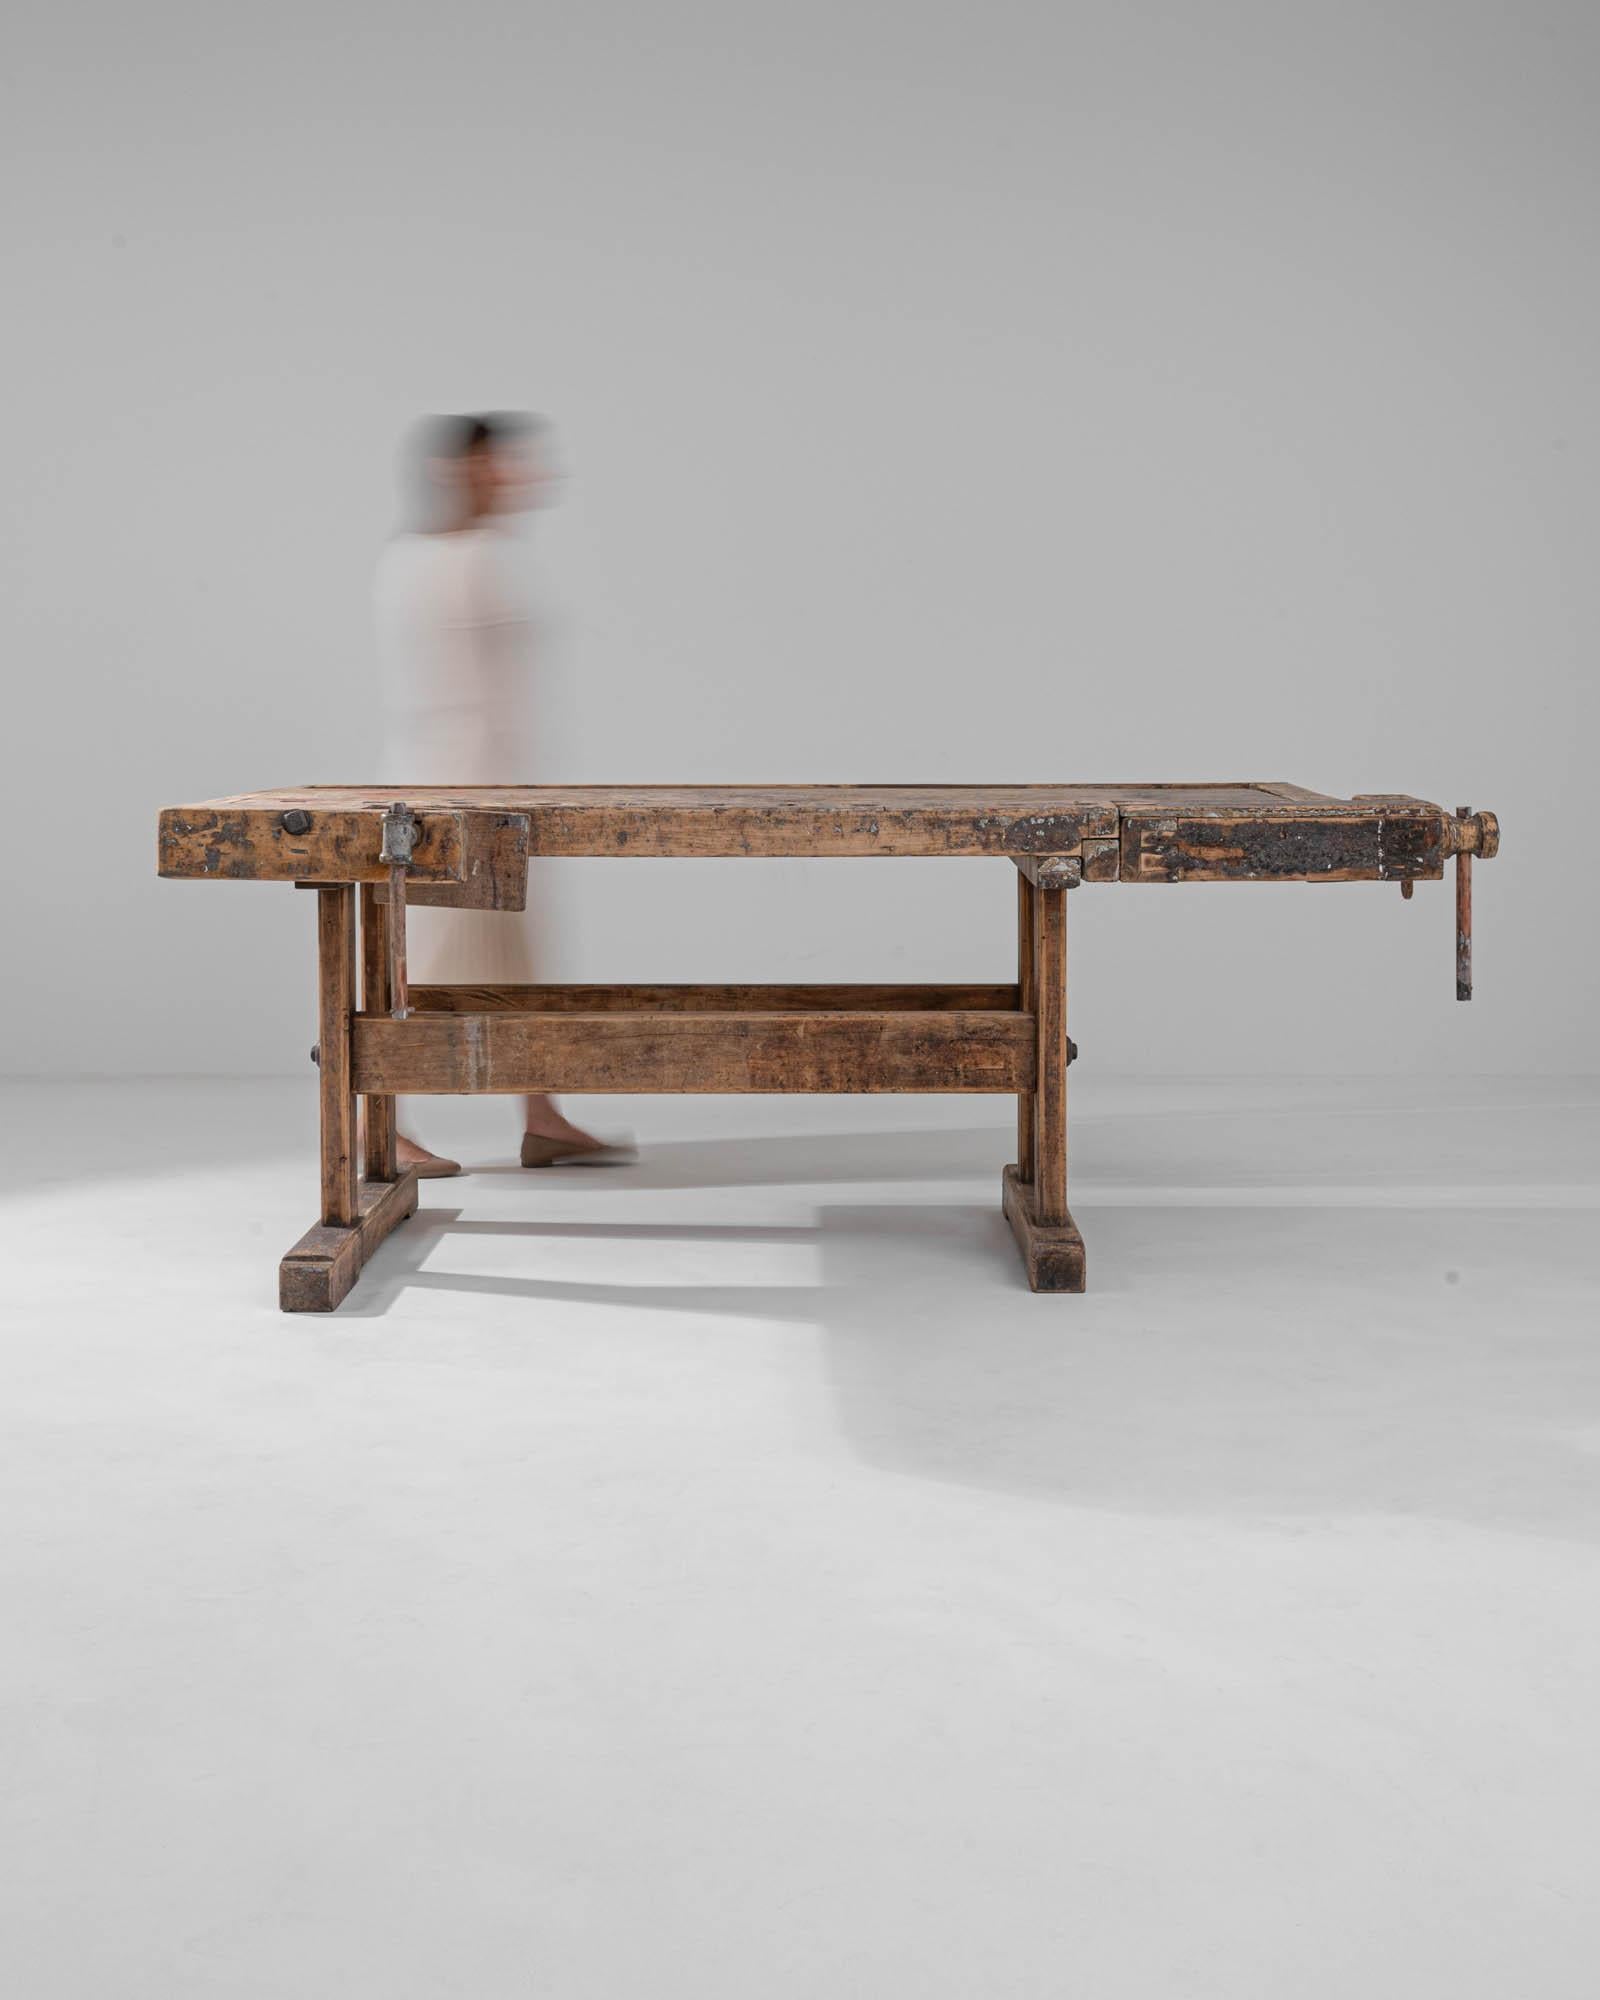 Die Kombination aus beruhigender Solidität und stimmungsvoller Patina verleiht diesem Vintage-Arbeitstisch aus Holz einen zeitlosen industriellen Charme. Das asymmetrische Design, das im 20. Jahrhundert in Mitteleuropa gebaut wurde, ist durch und